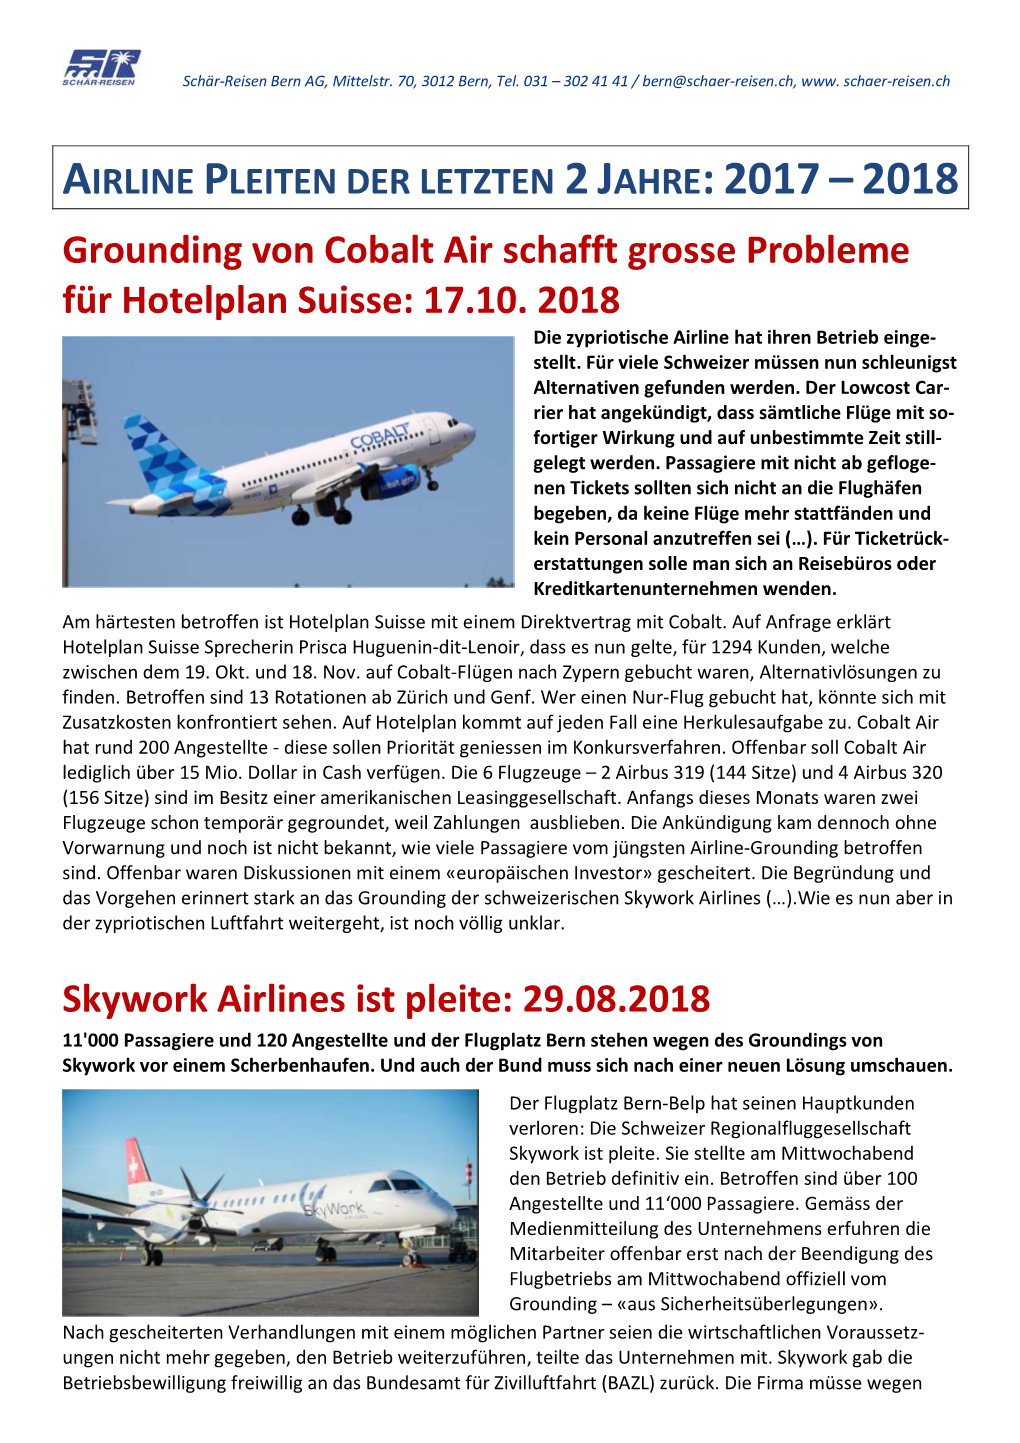 Grounding Von Cobalt Air Schafft Grosse Probleme Für Hotelplan Suisse: 17.10